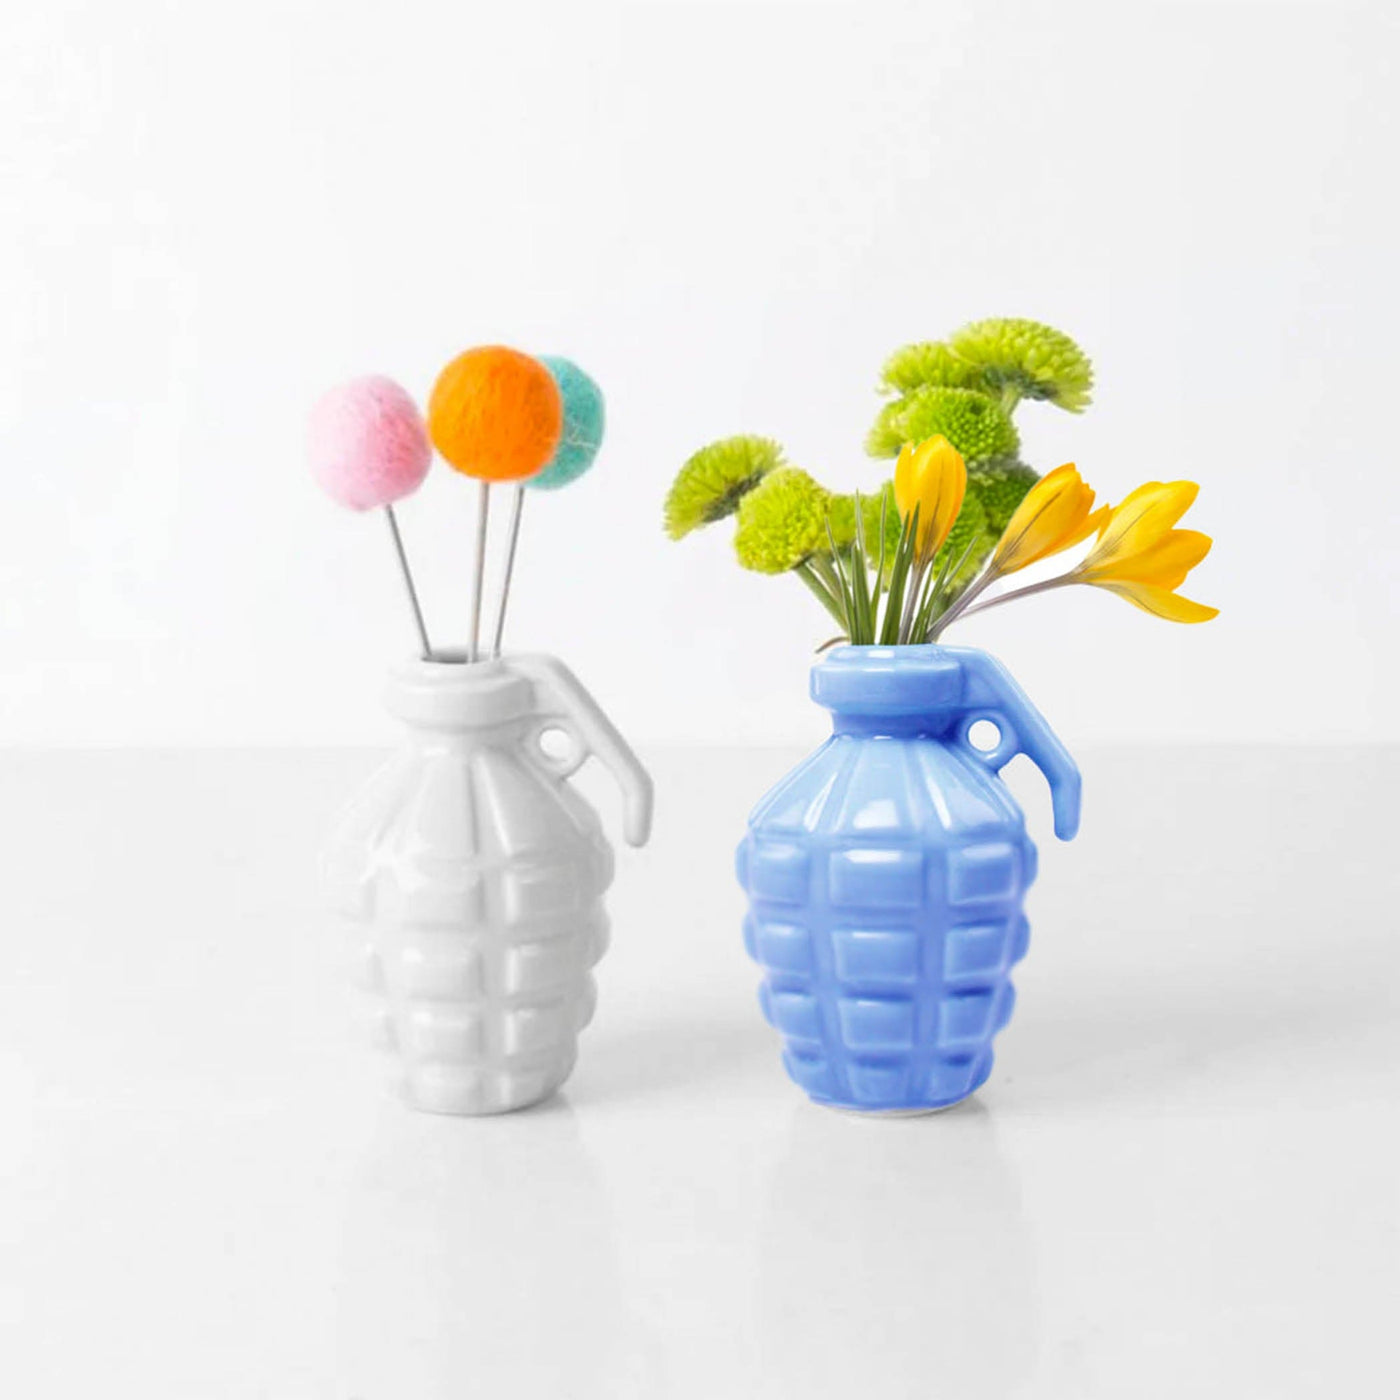 Explorez l'originalité du vase grenade Kapow, un vase qui promet de vous faire sourire et d'élever le niveau de vos arrangements floraux avec son accent unique.